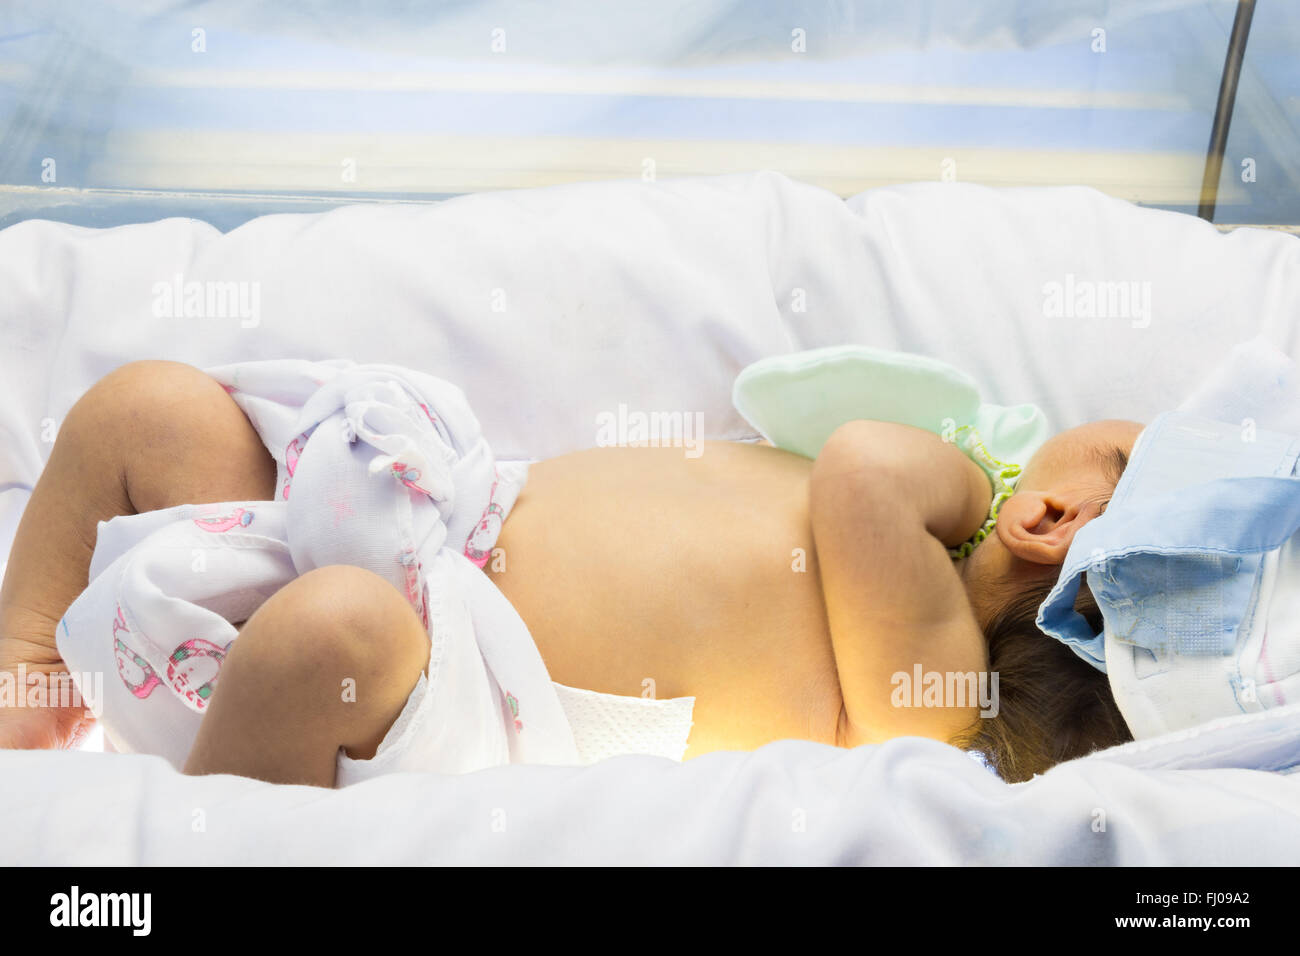 La ictericia neonatal. Recién fue tratada por la fototerapia (luz de neón azul en la parte superior e inferior del recién nacido ) Foto de stock